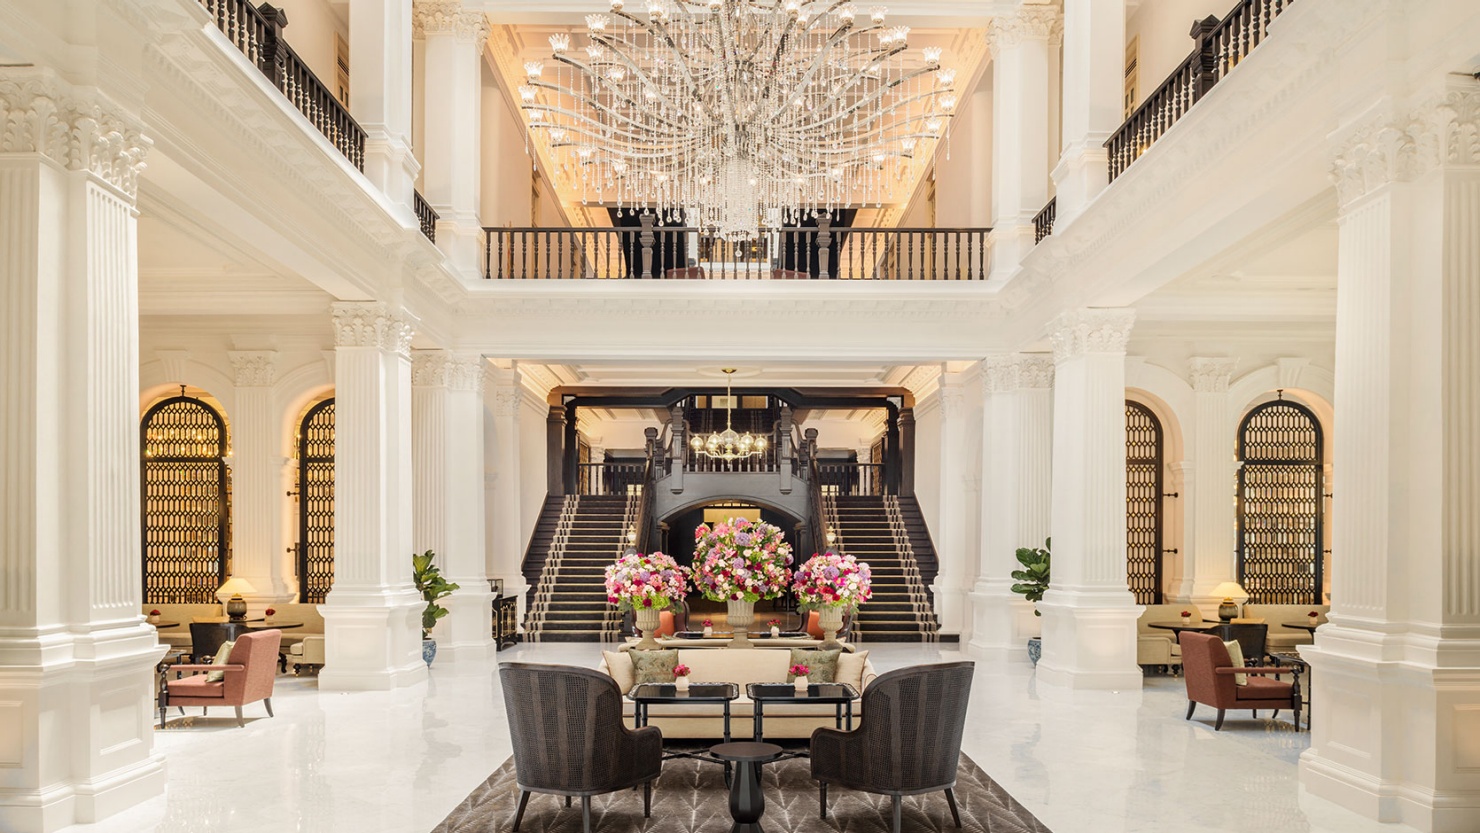 海南雅居乐莱佛士酒店将呈现2019年亚洲婚礼风尚_资讯频道_悦游全球旅行网